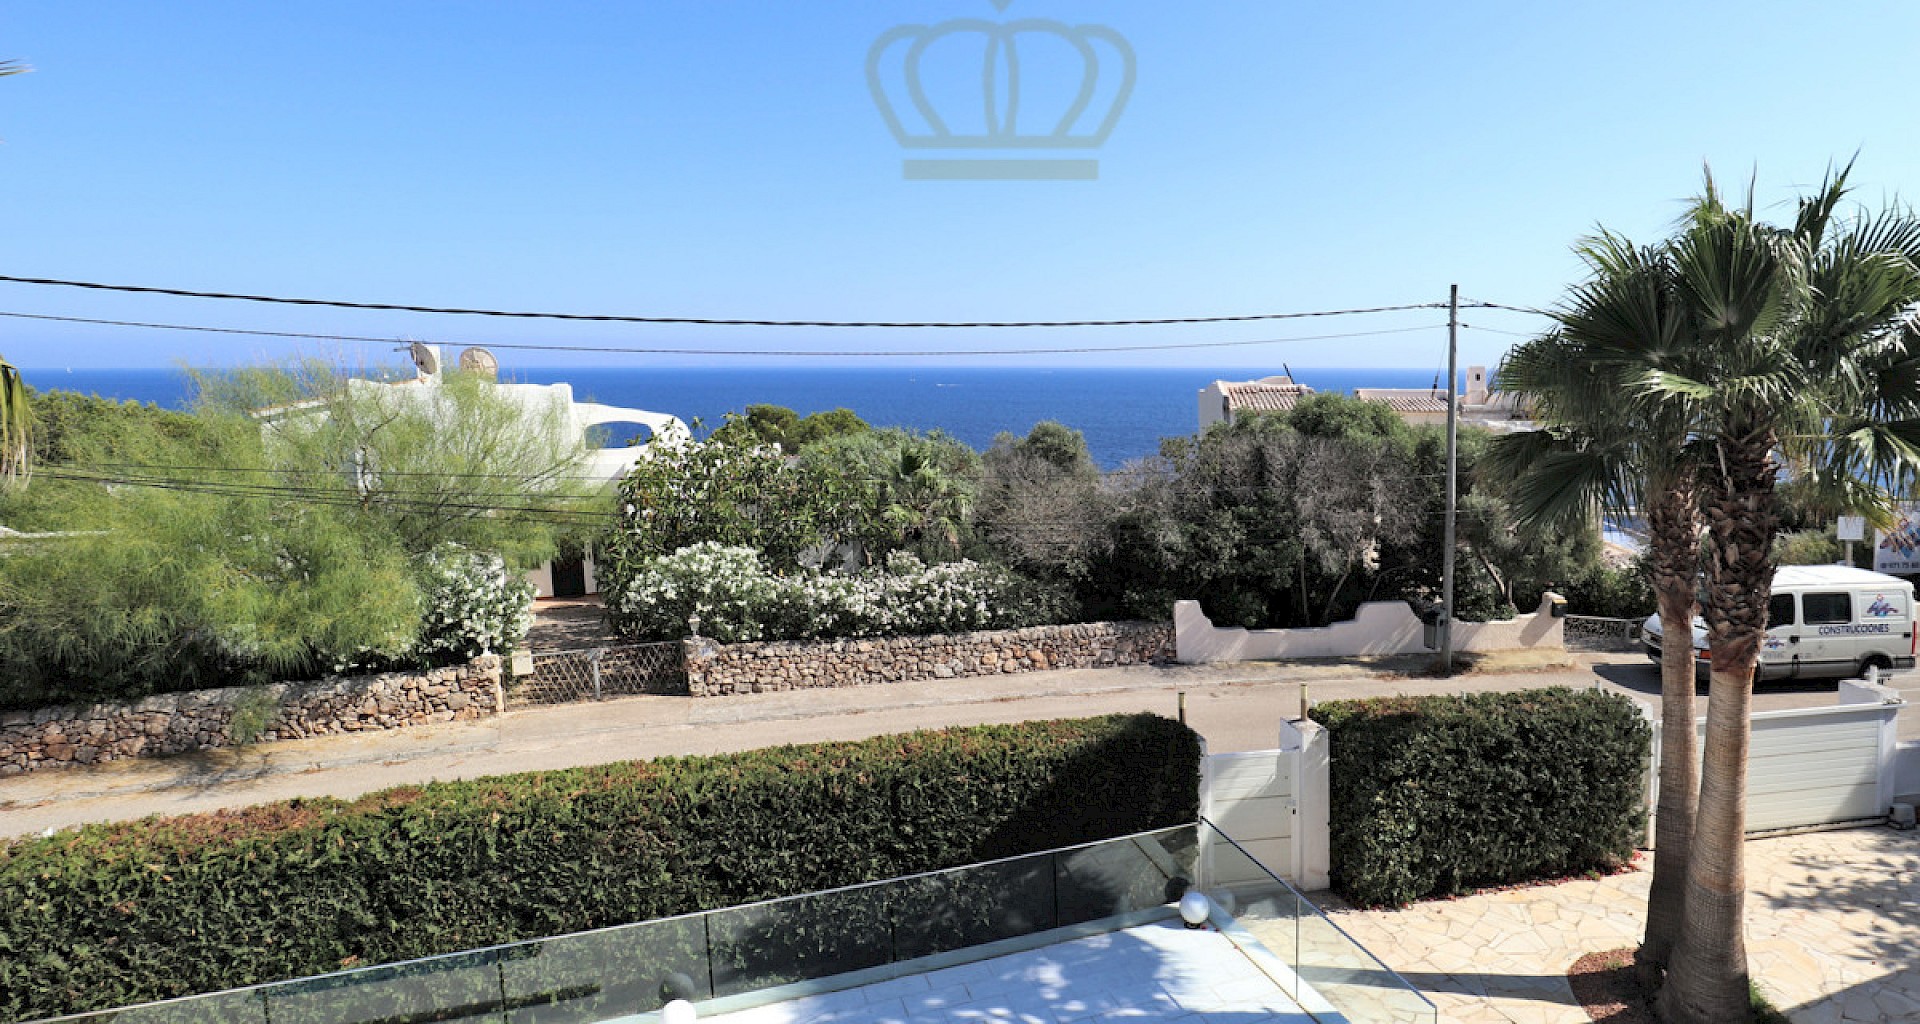 KROHN & LUEDEMANN Villa in Cala Pi Mallorca mit Meerblick und Pool in ruhiger Lage 